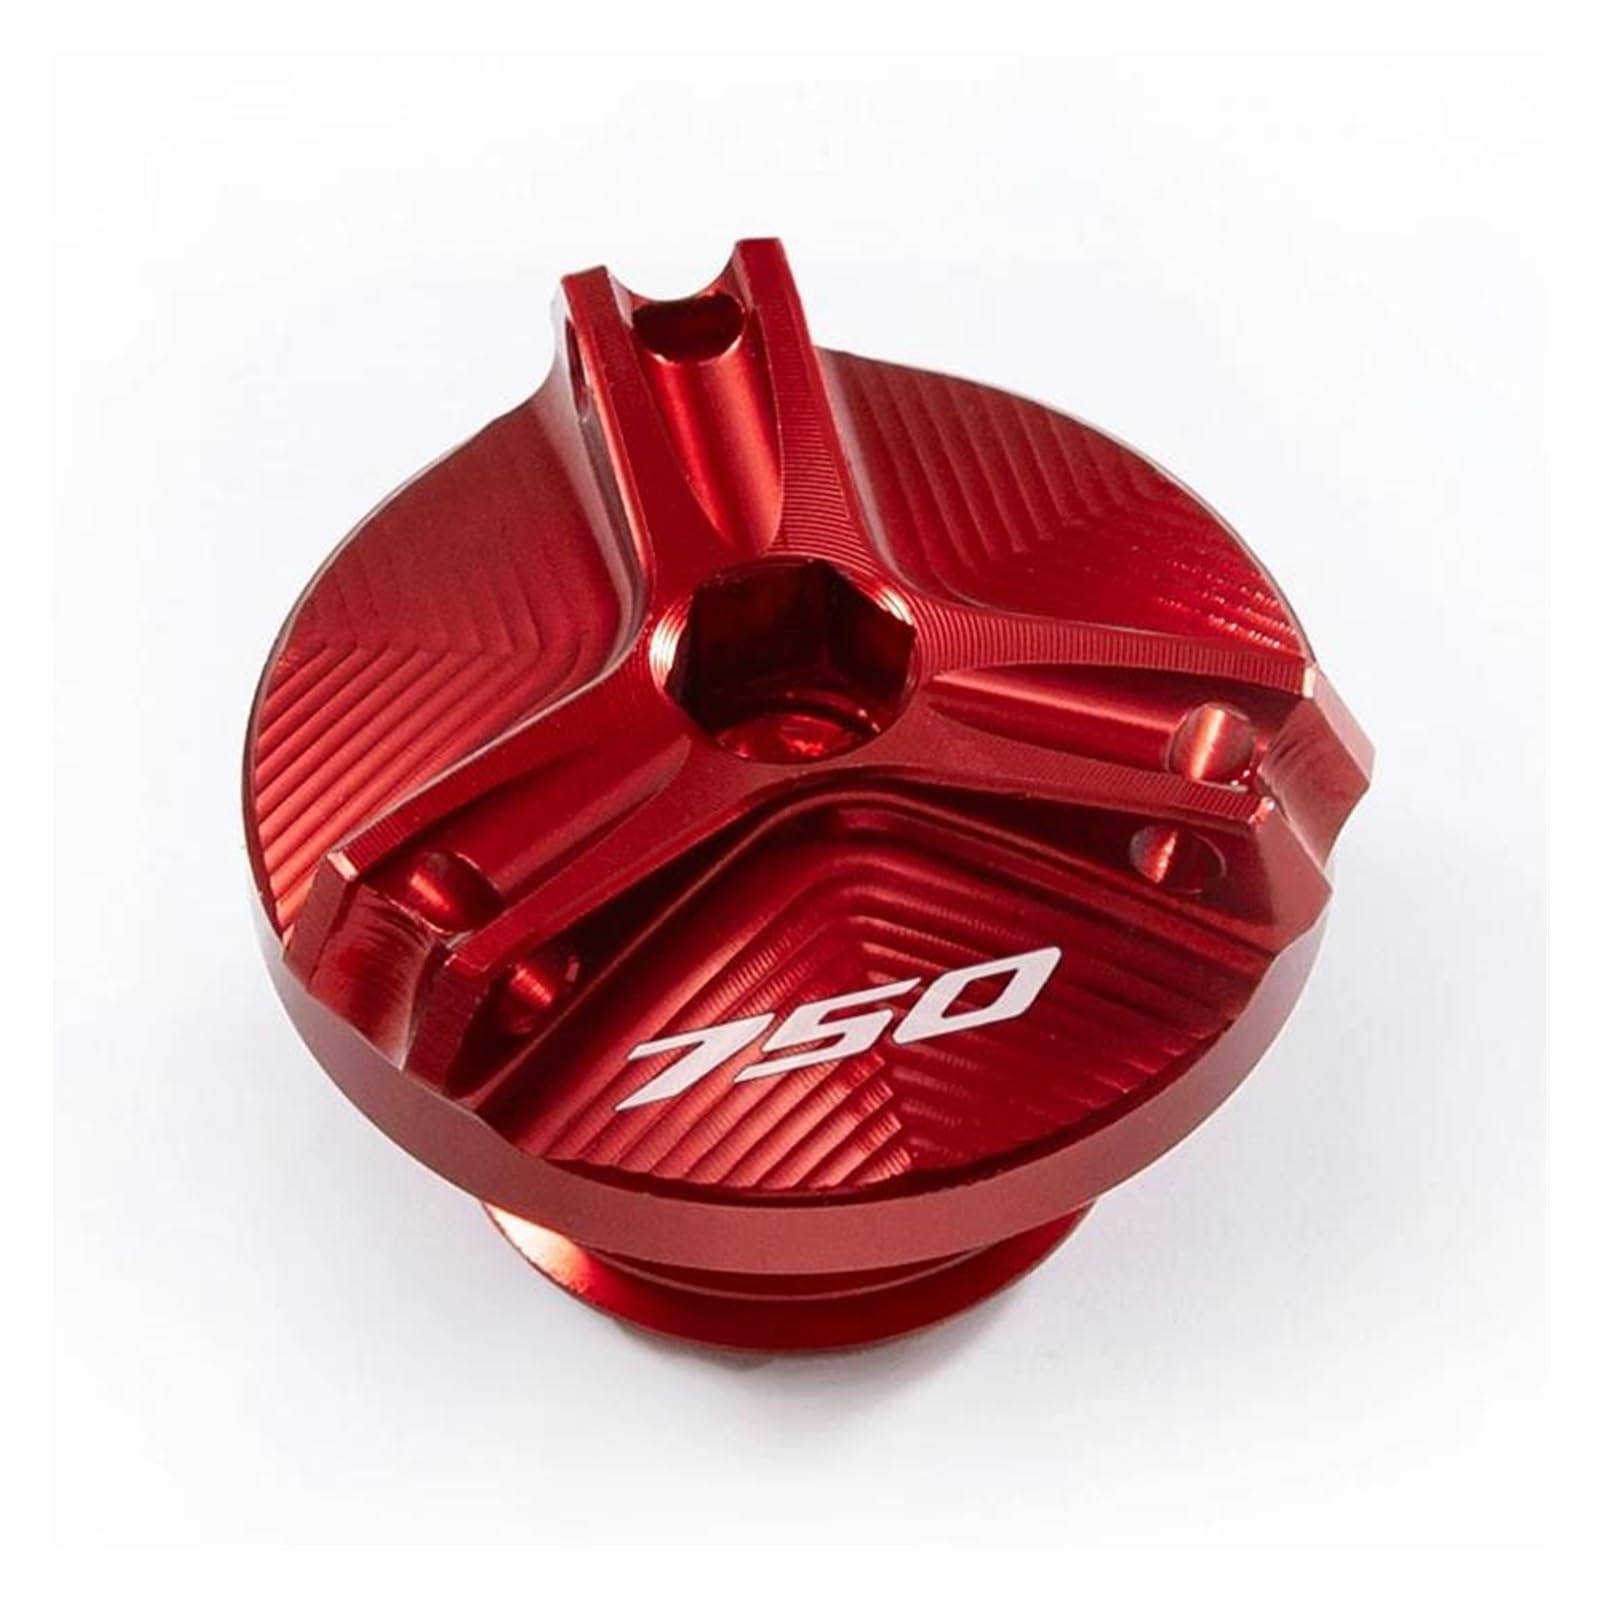 Öleinfüllschutzkappe Für HO&NDA Forza 750 FORZA 750 2020 2021 2022 Motorrad Motoröl Kappe Bolzen Tankdeckel Schutz Zubehör(Red) von QIBOZNG